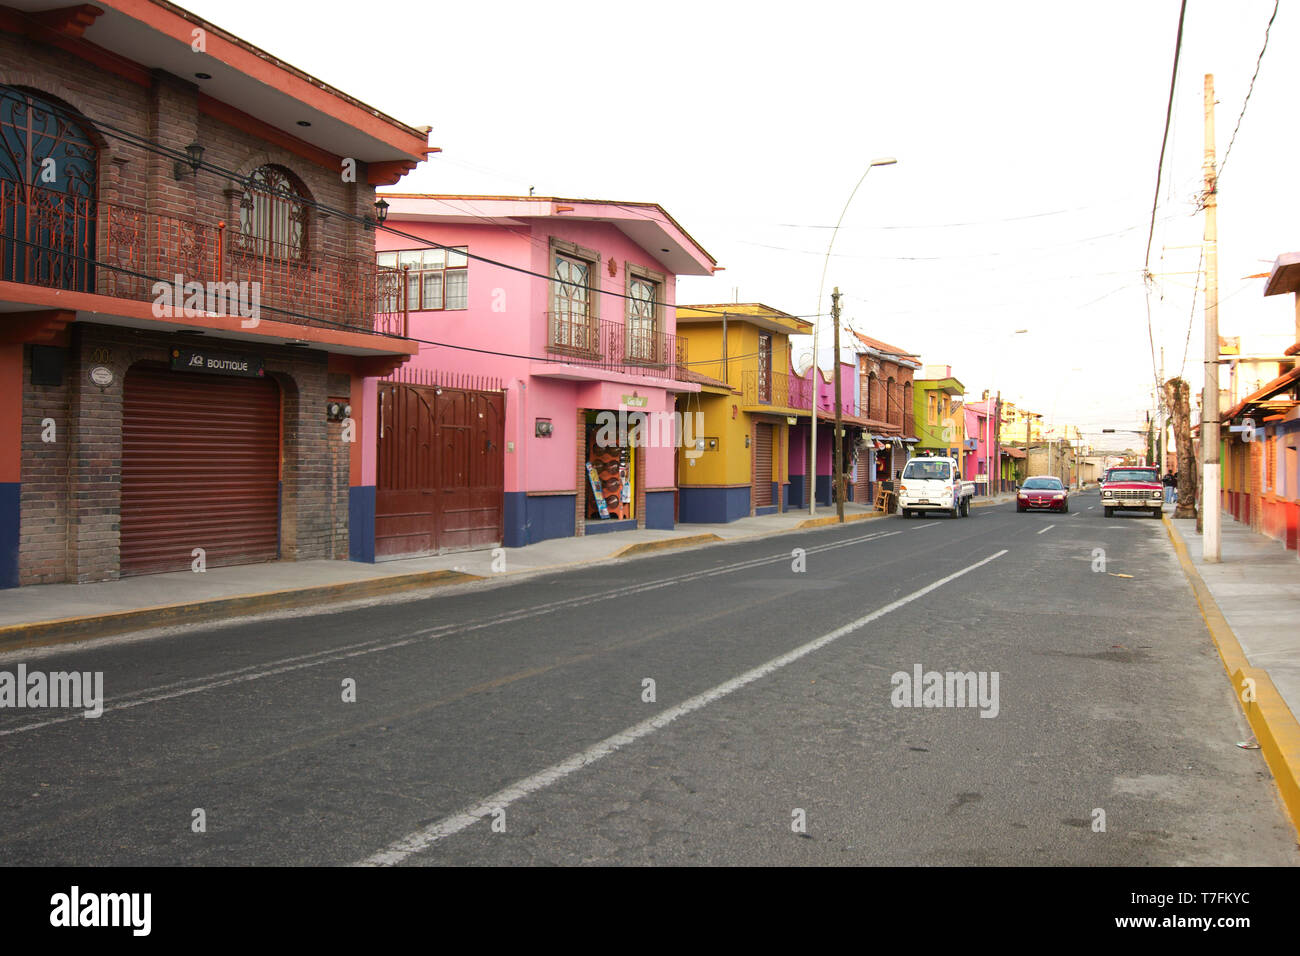 Metepec, Estado de México, México - 2019: una calle en el centro histórico lleno de casas tradicionales de gran colorido. Foto de stock